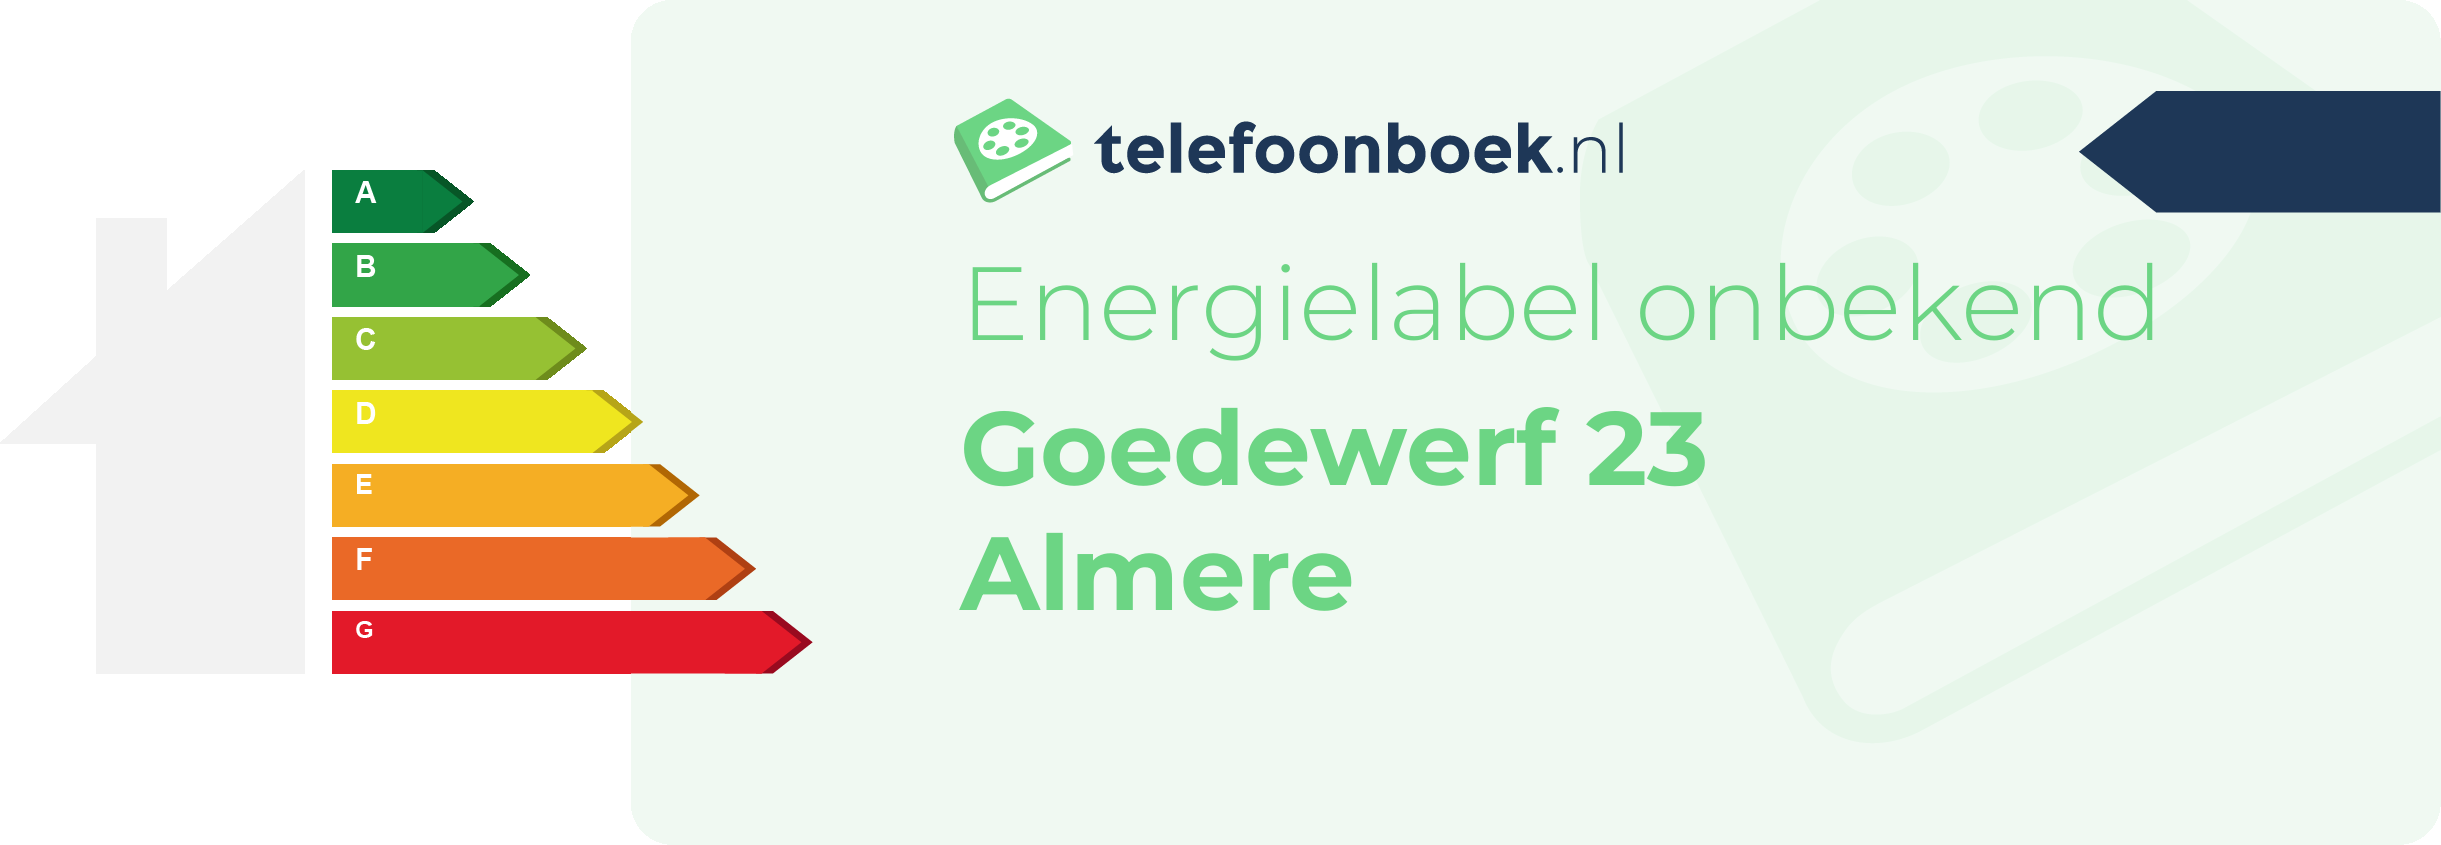 Energielabel Goedewerf 23 Almere